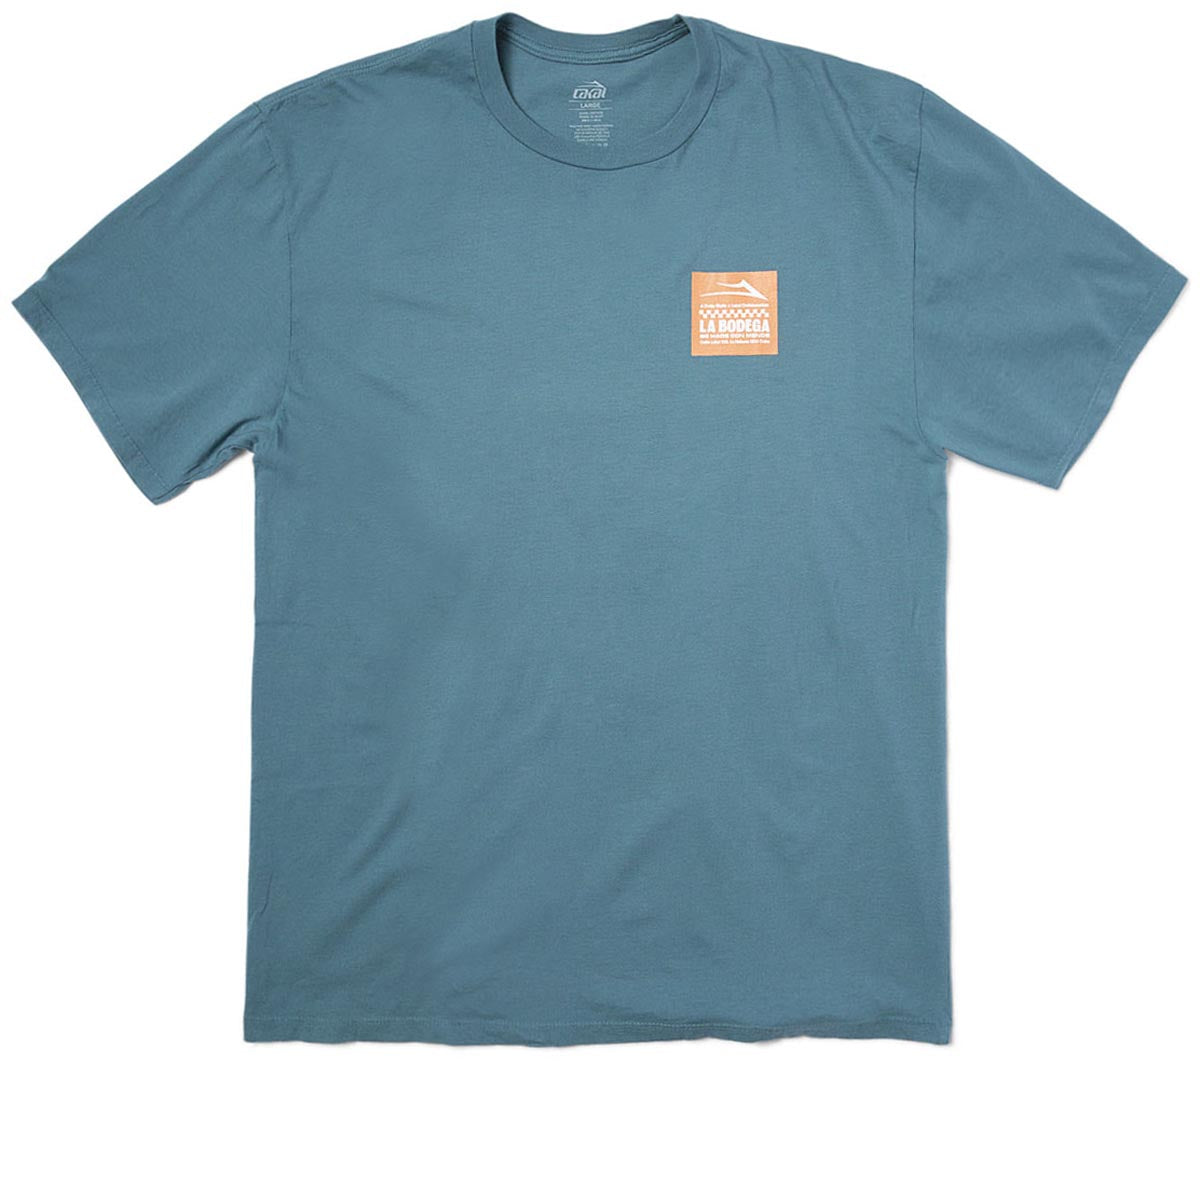 Lakai La Bodega T-Shirt - Mint image 2